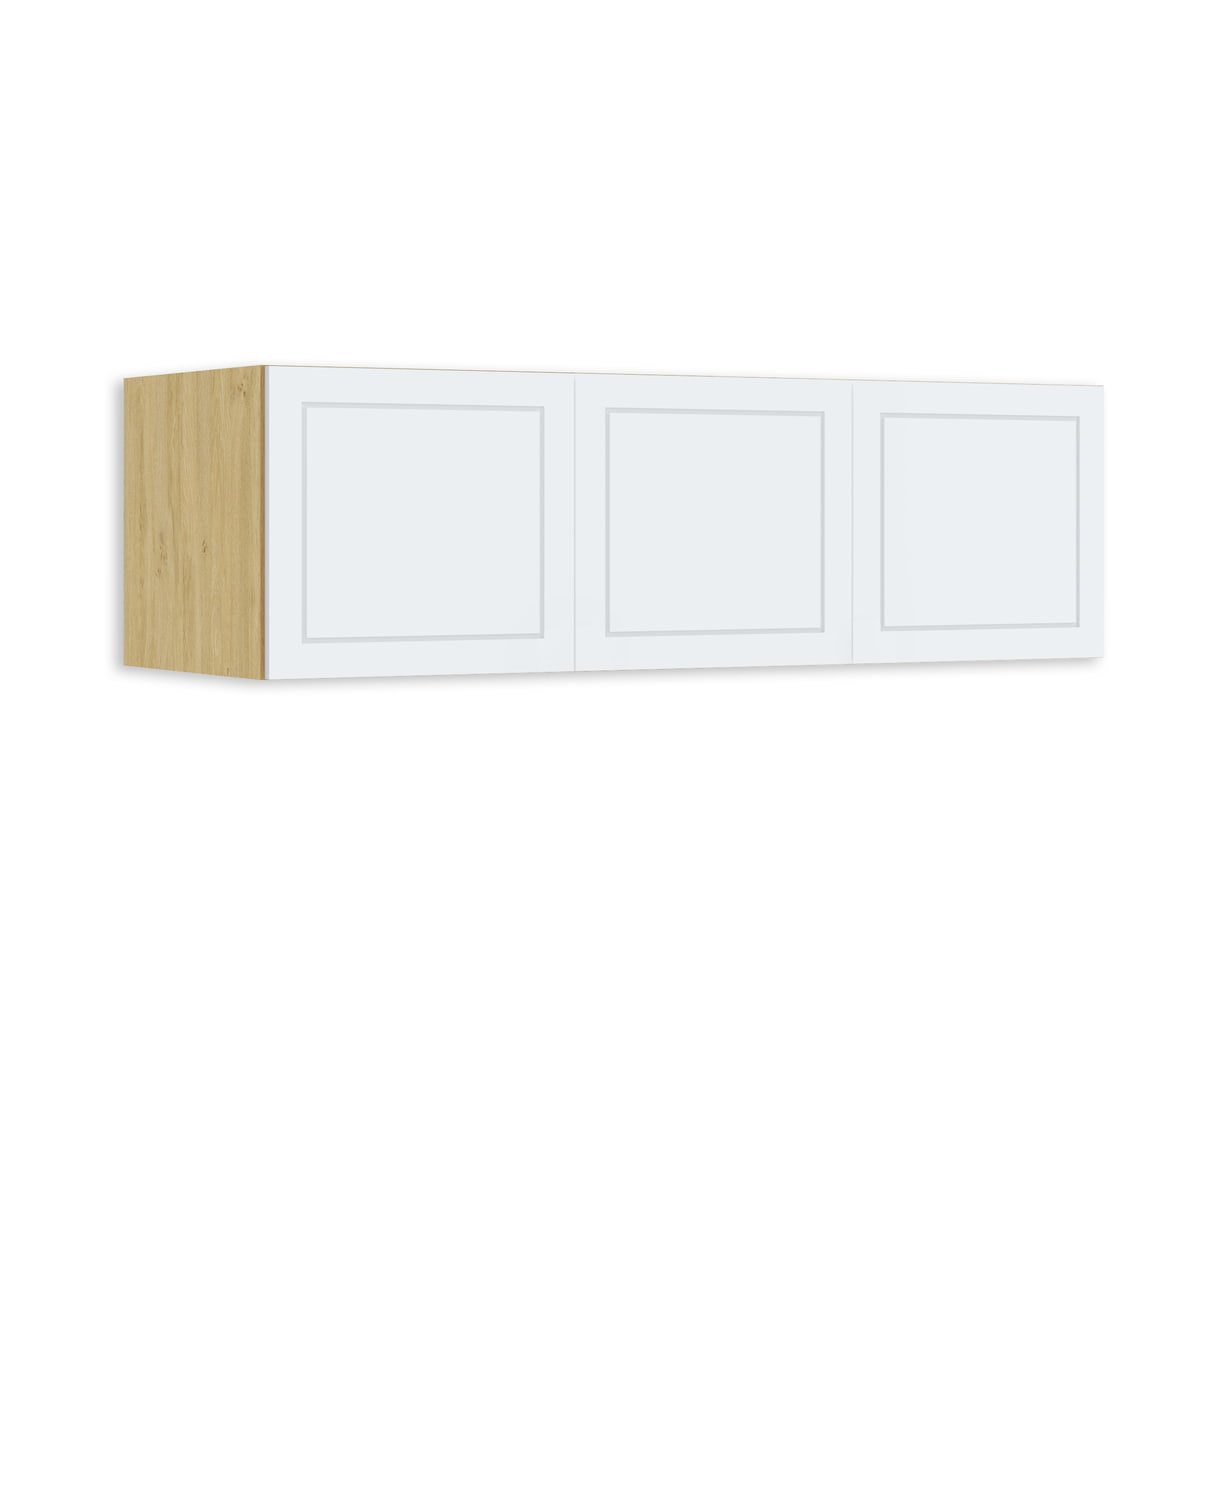 Szintemelő szekrényre 150 Frame Oak White